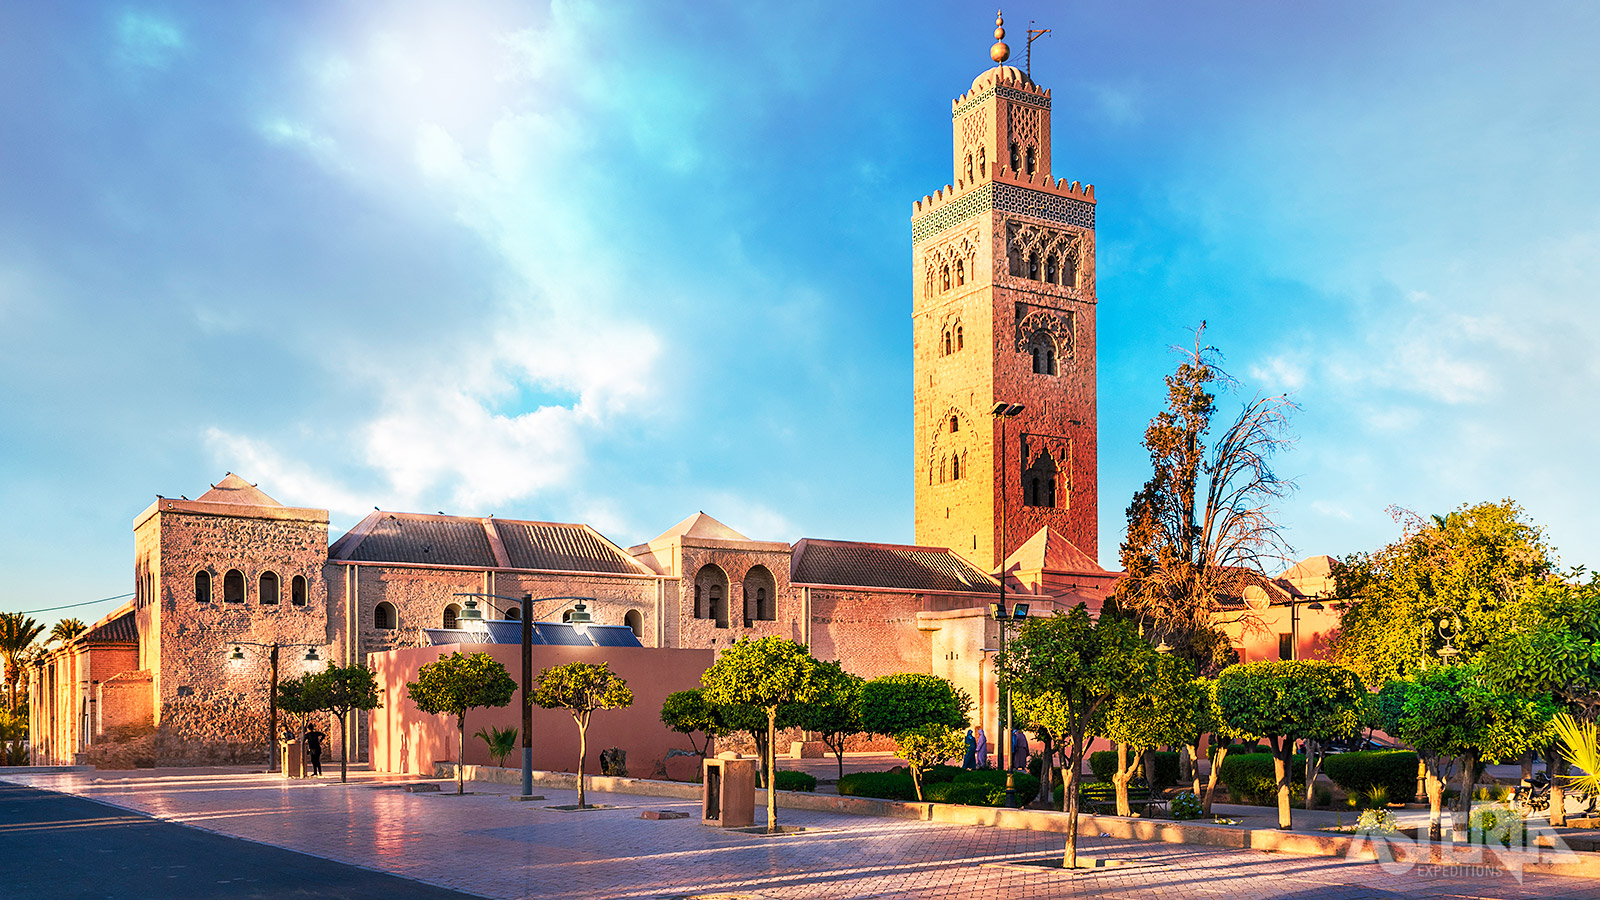 De 80m hoge Koutoubia Moskee uit 1158 is de grootste moskee van Marrakech